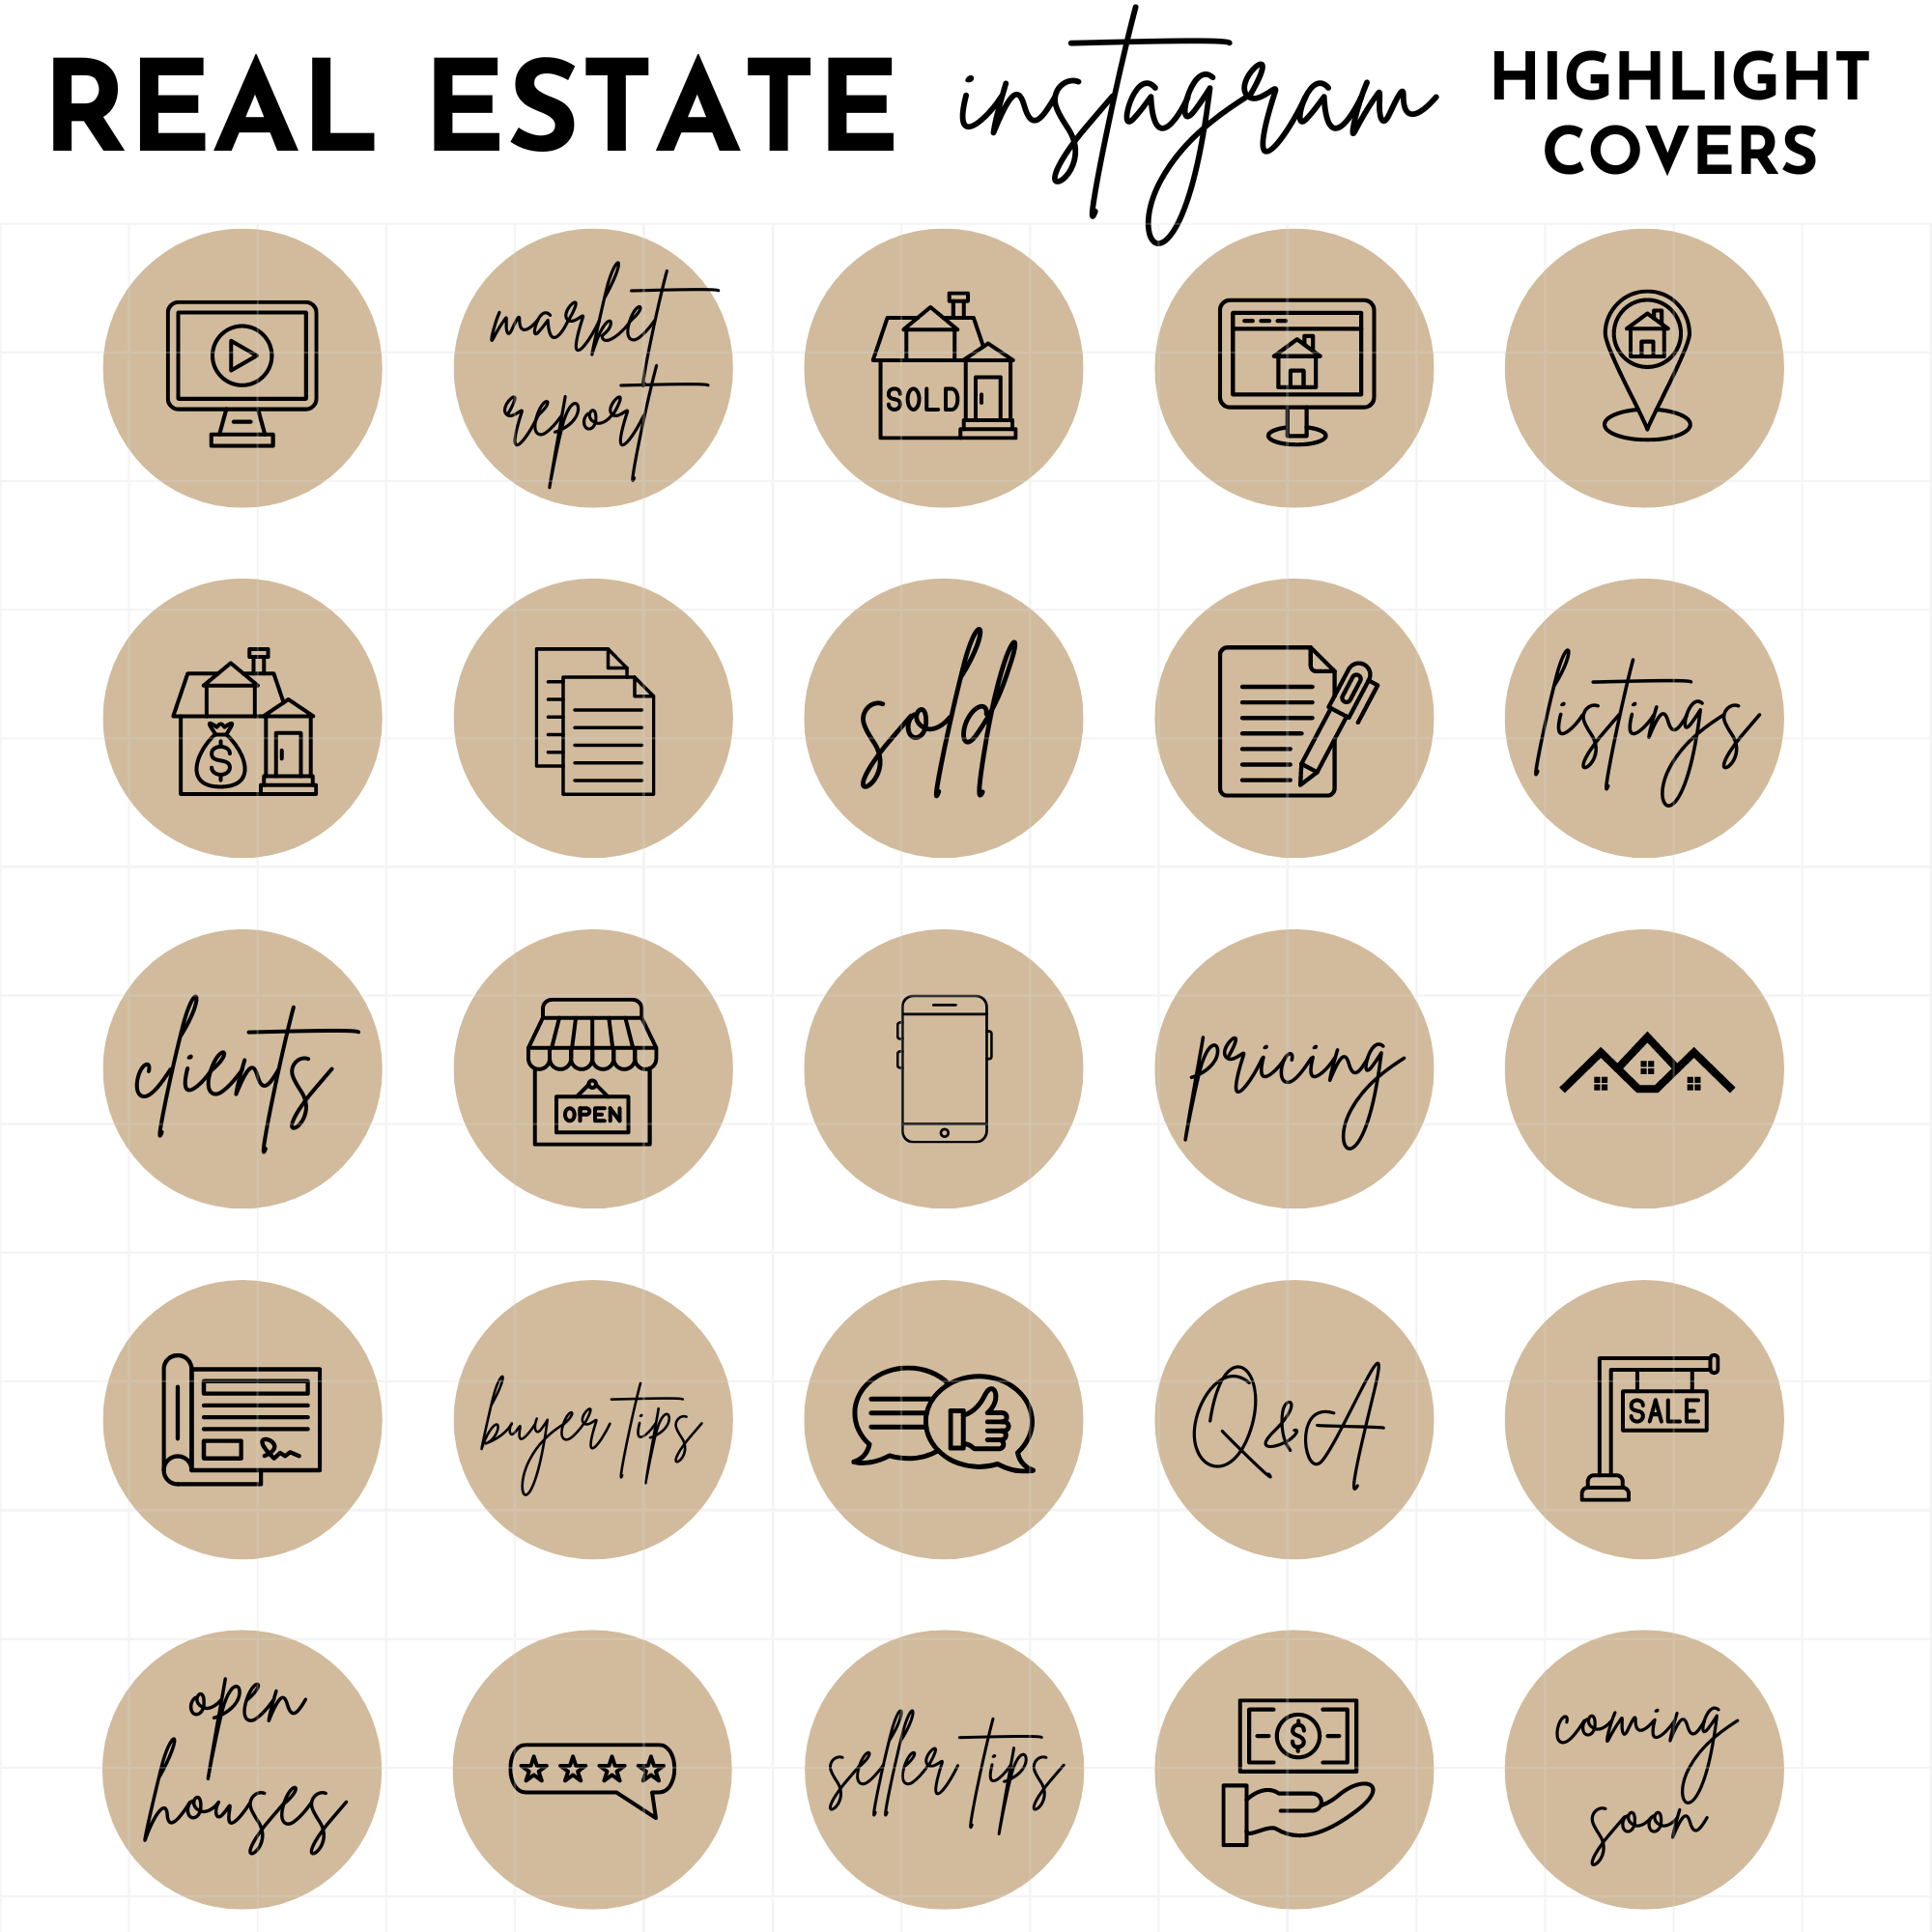 Biểu tượng Instagram Story Highlight màu nâu Bất động sản: Cùng tìm hiểu về các biểu tượng Instagram Story Highlight màu nâu Bất động sản hữu ích giúp bạn truyền tải thông tin một cách chuyên nghiệp và thu hút khách hàng trong lĩnh vực kinh doanh bất động sản.